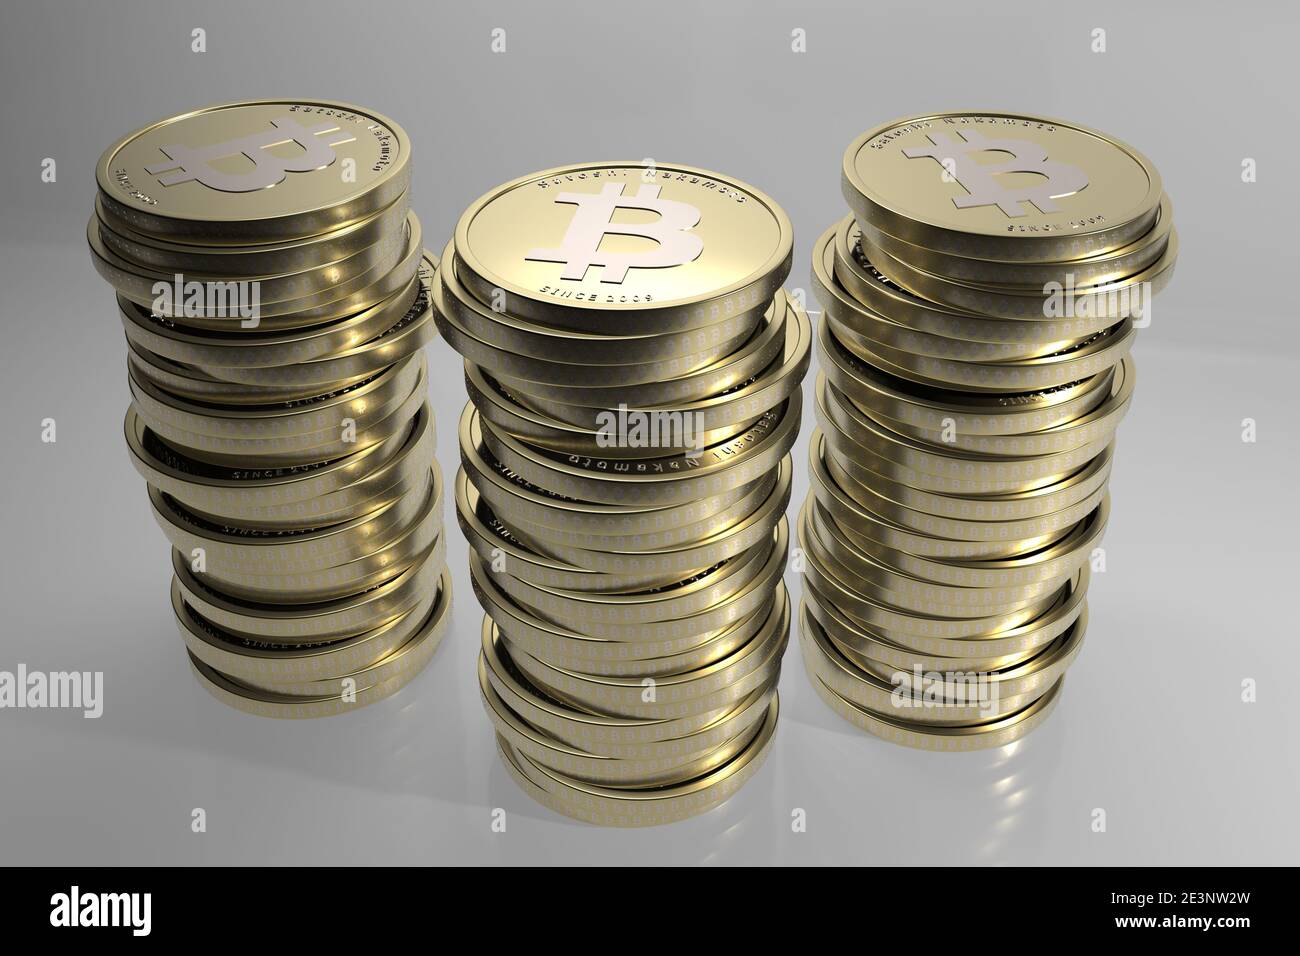 Dieses Bild ist komplett modelliert, strukturiert und in 3ds max. Gerendert Dieser Bitcoin zeigt einen anderen Look, mit neuem Text. Stockfoto